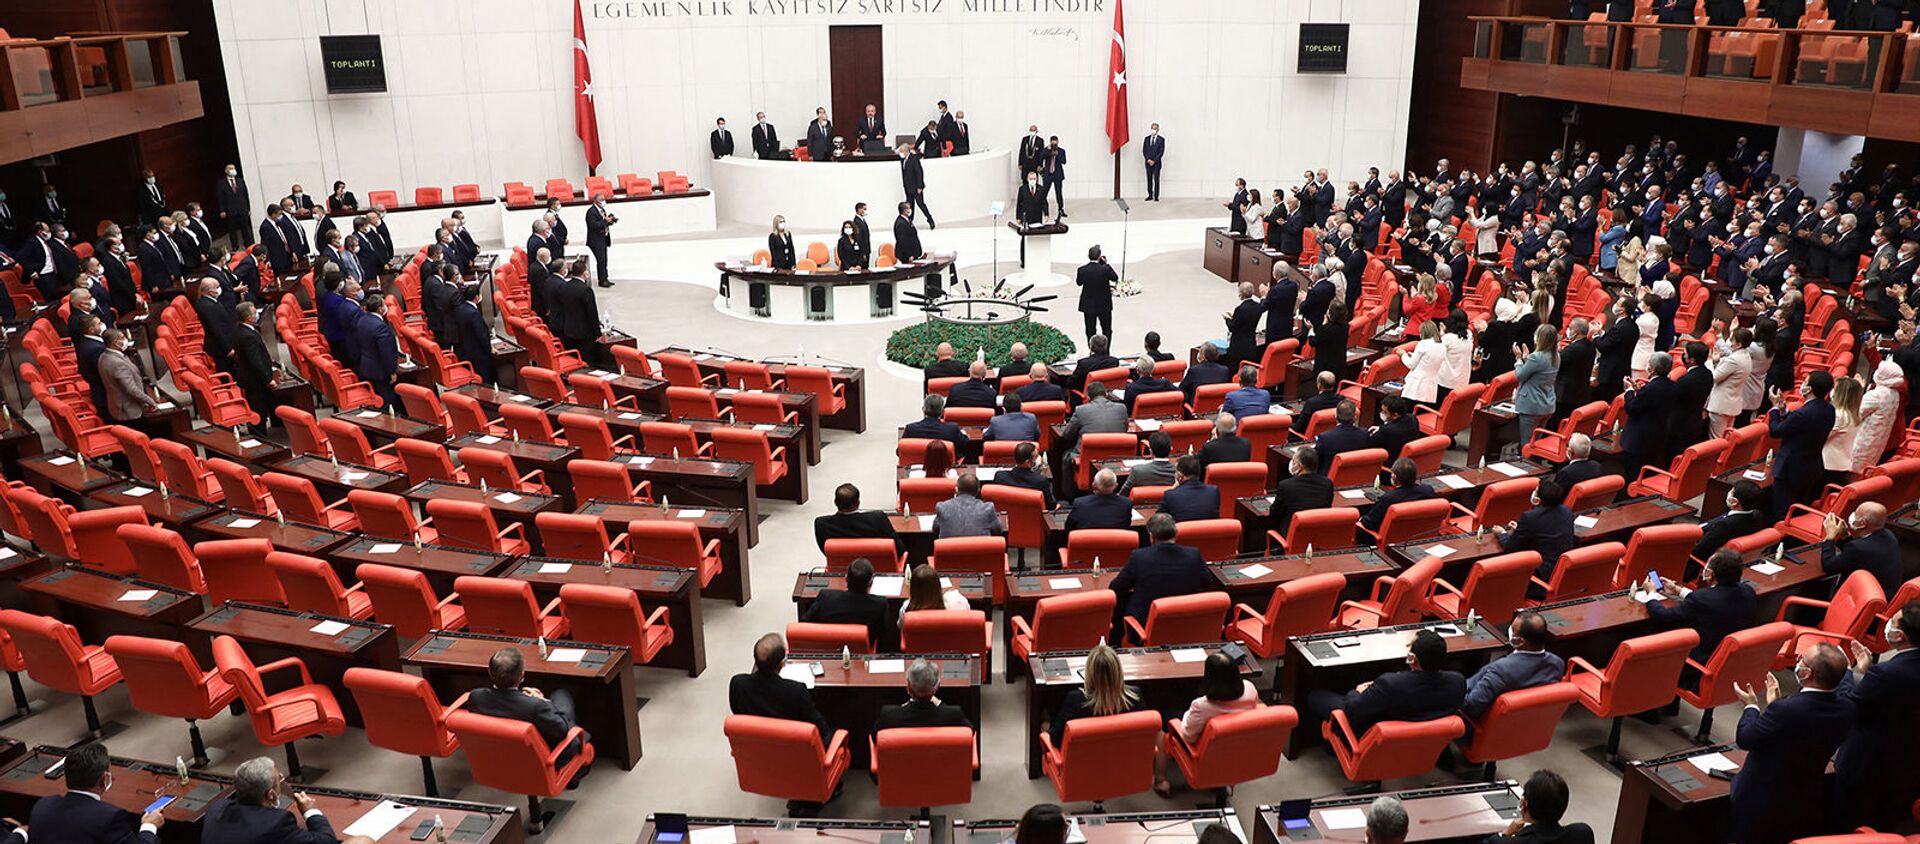 Заседание четвертой законодательной сессии турецкого парламента (1 октября 2020). Анкара - Sputnik Армения, 1920, 13.03.2021